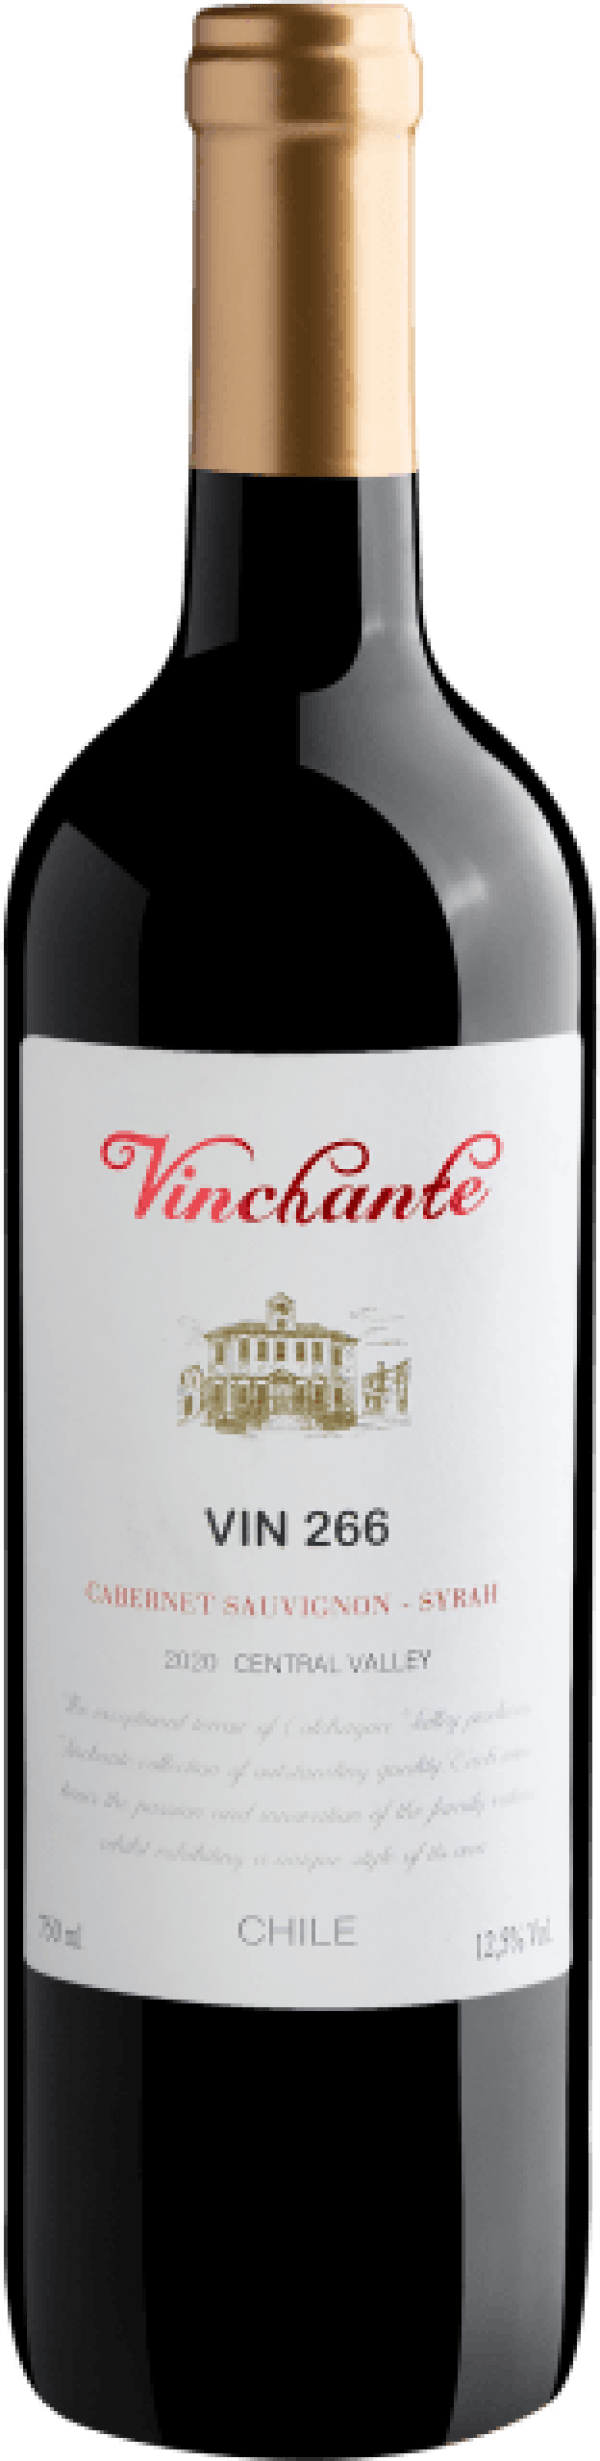 Vinchante Cabernet Sauvignon-Syrah 2020